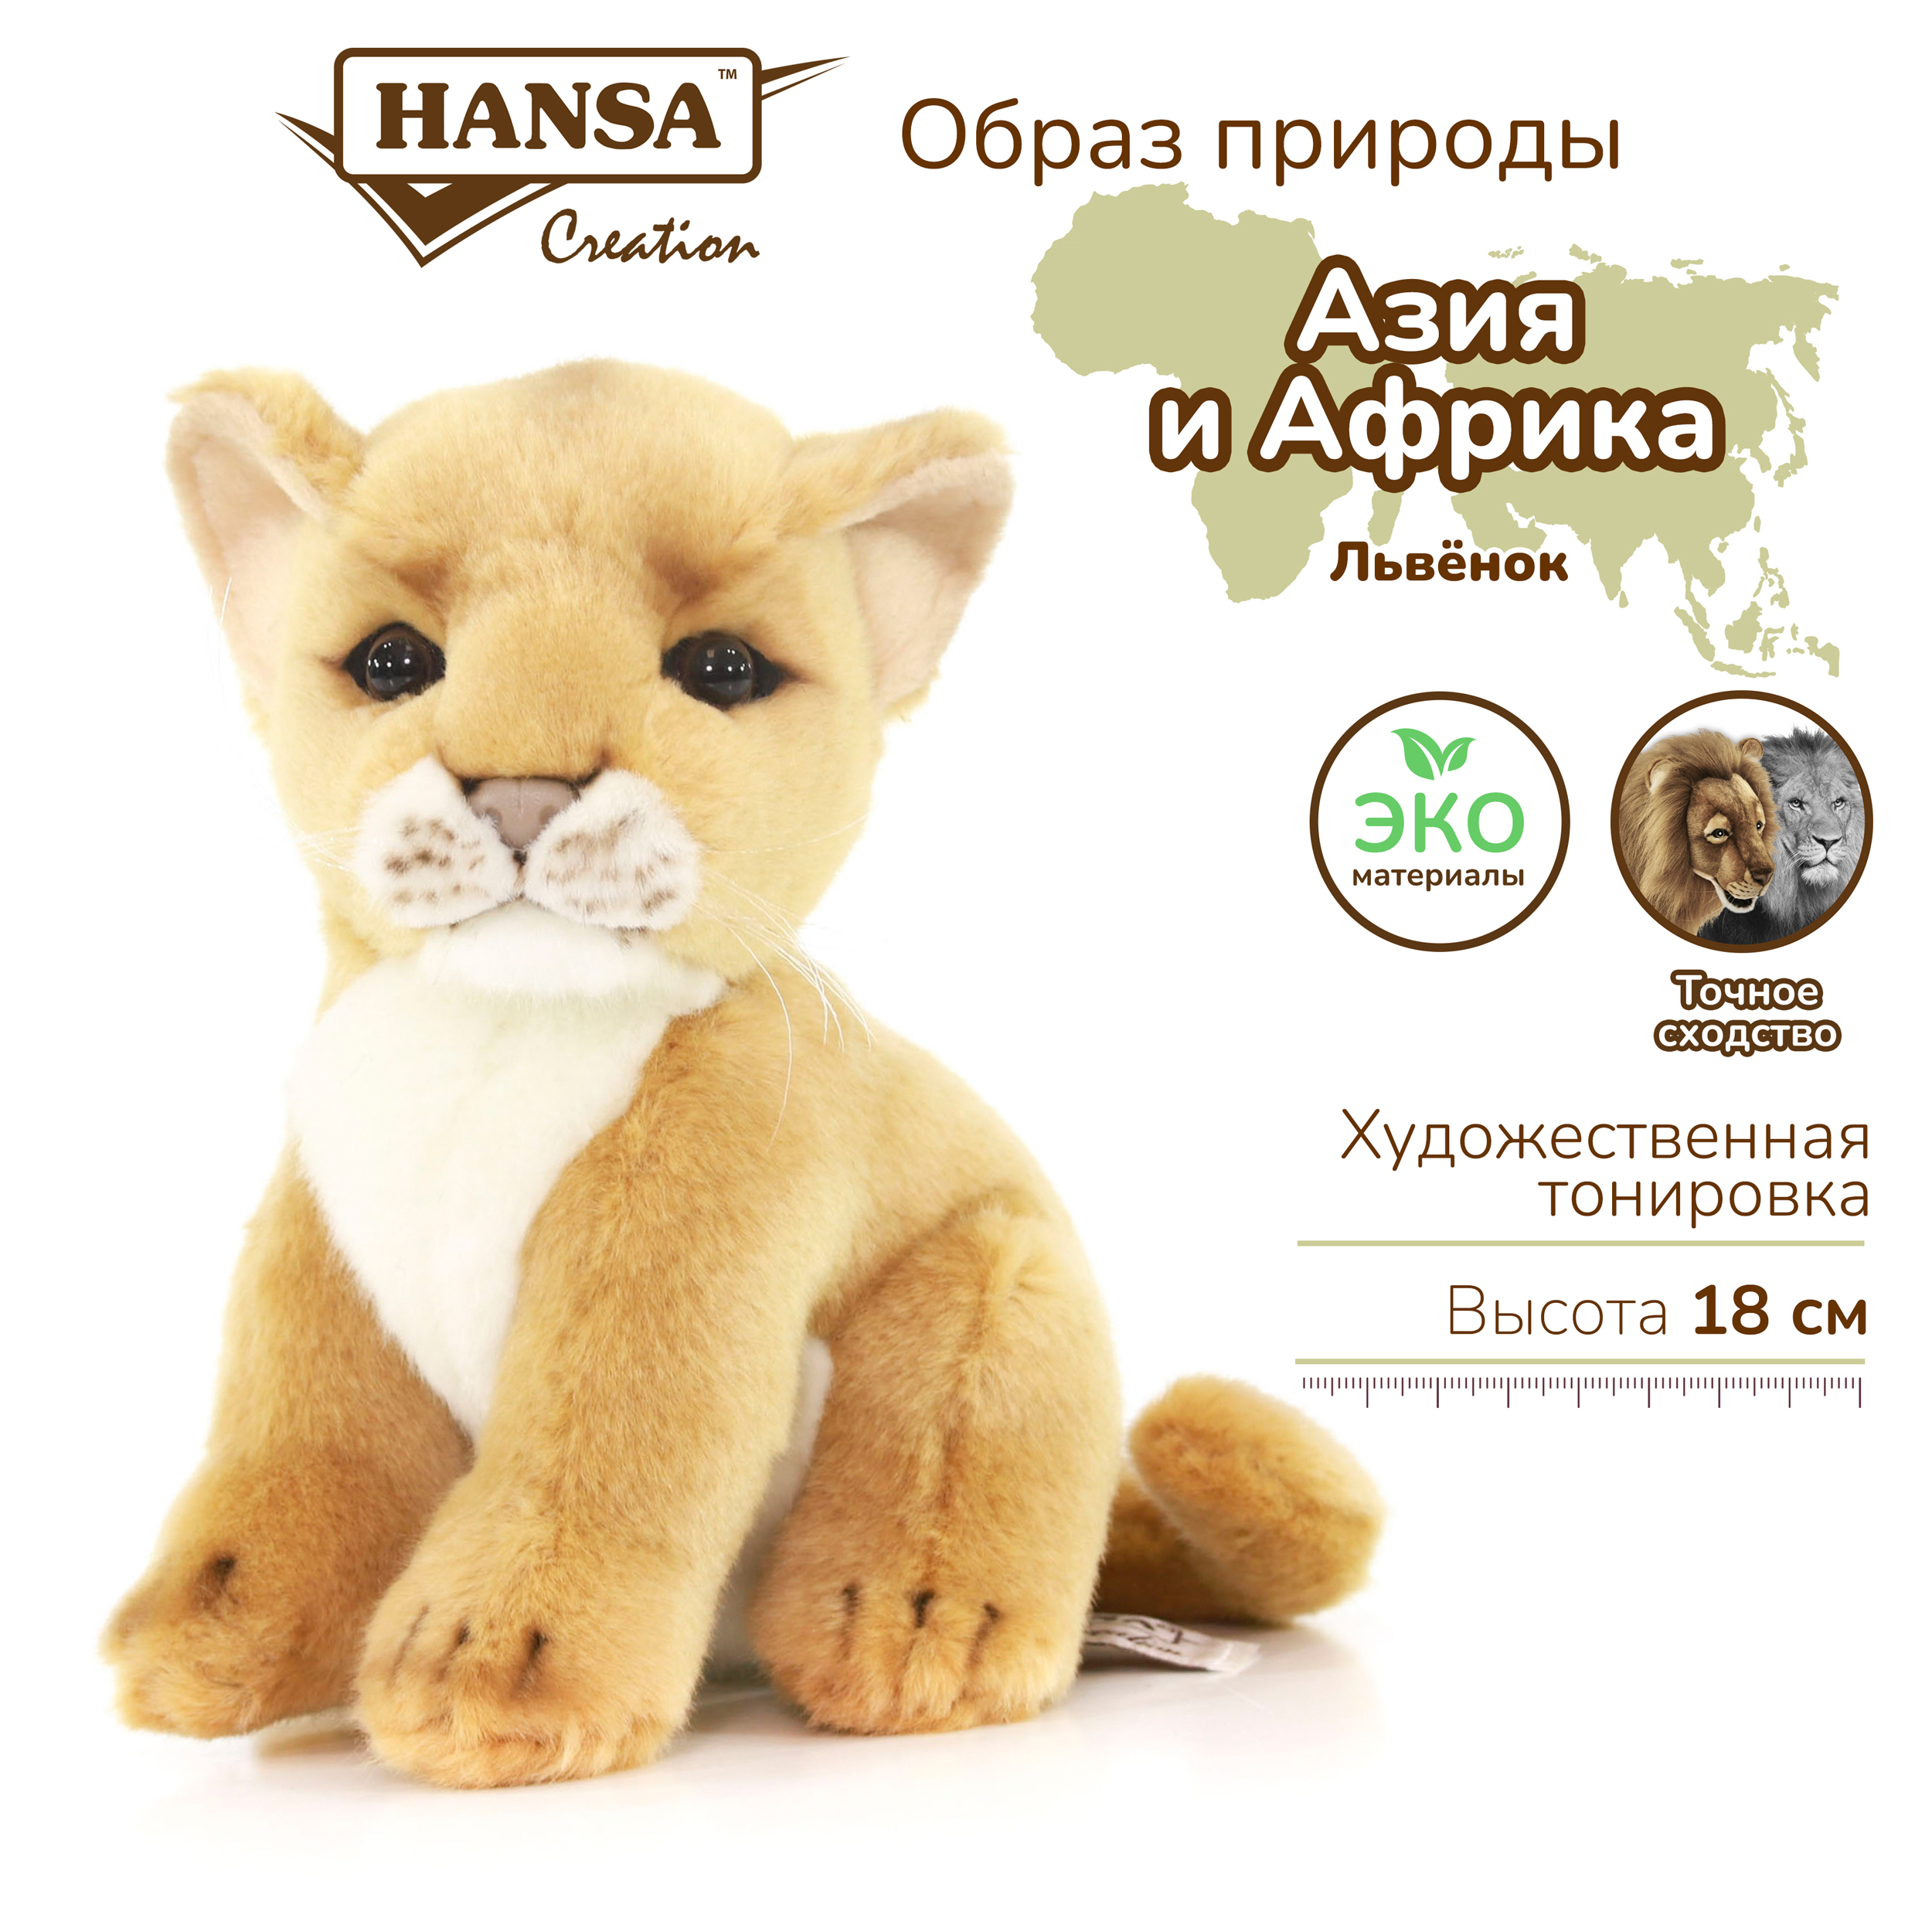 Купить мягкие игрушки львы в Украине